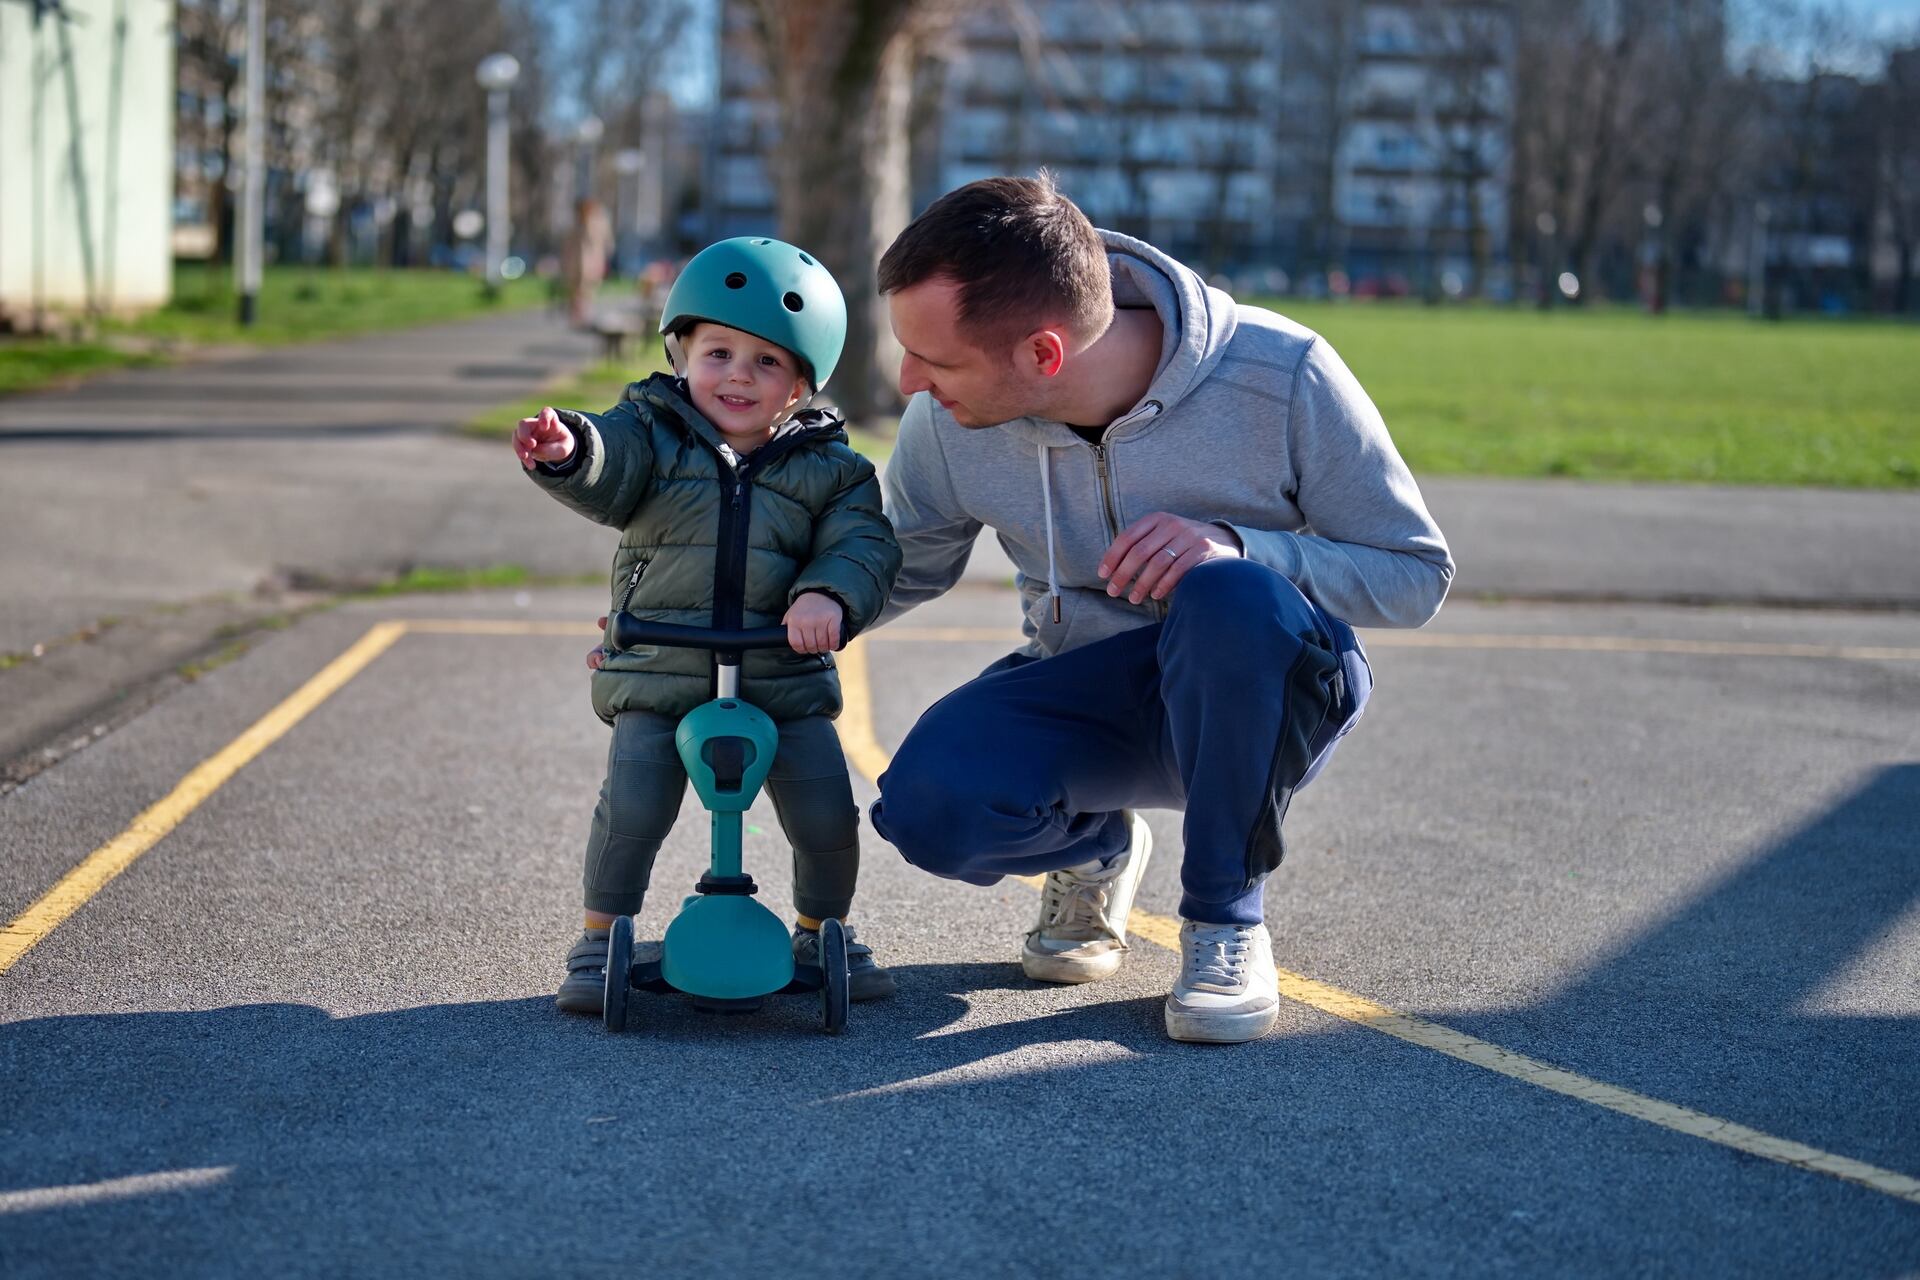 Mobilità dolce: l’educazione all’uso degli scooter o trottinette andrebbe insegnato ai bambini fin dalla tenera età